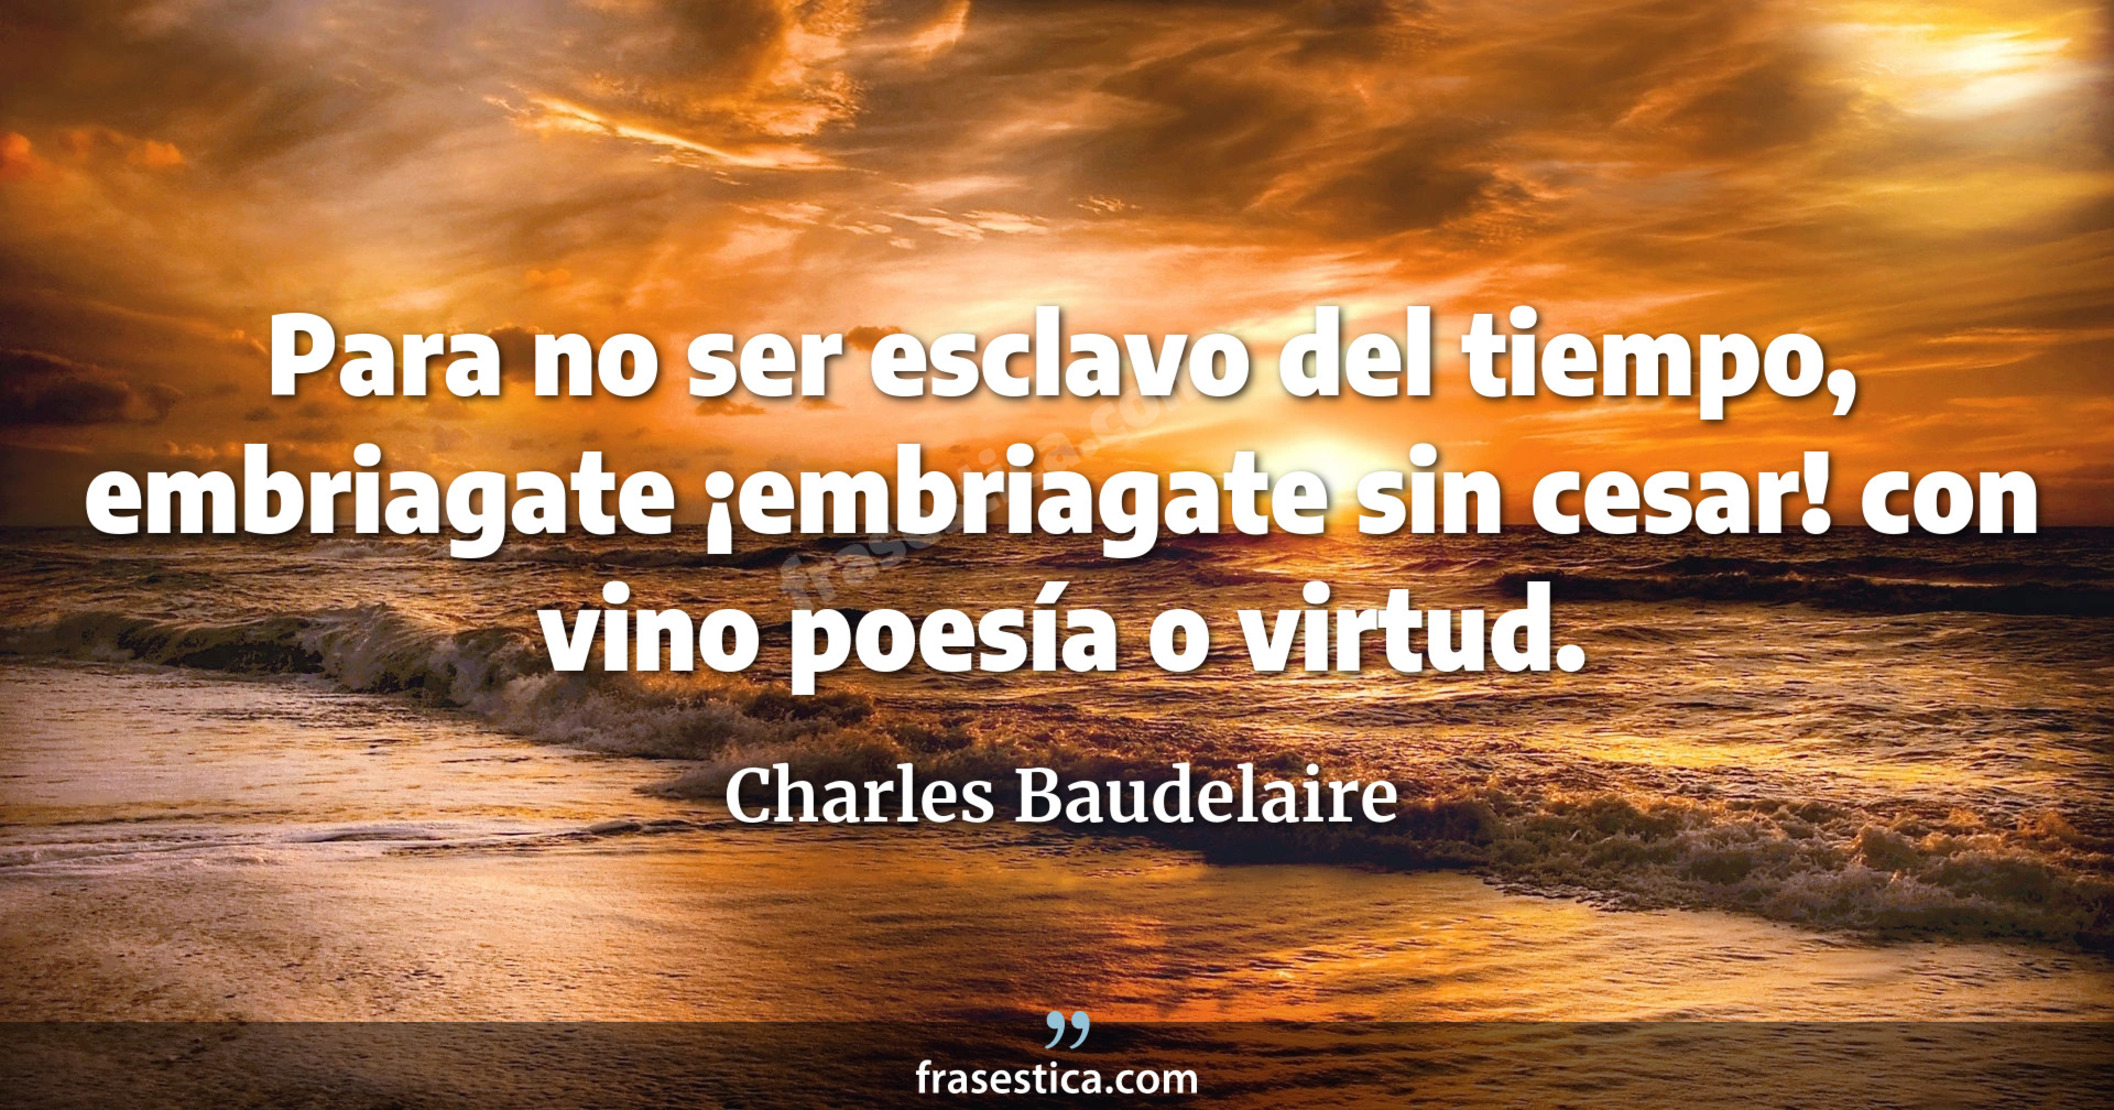 Para no ser esclavo del tiempo, embriagate ¡embriagate sin cesar! con vino poesía o virtud. - Charles Baudelaire